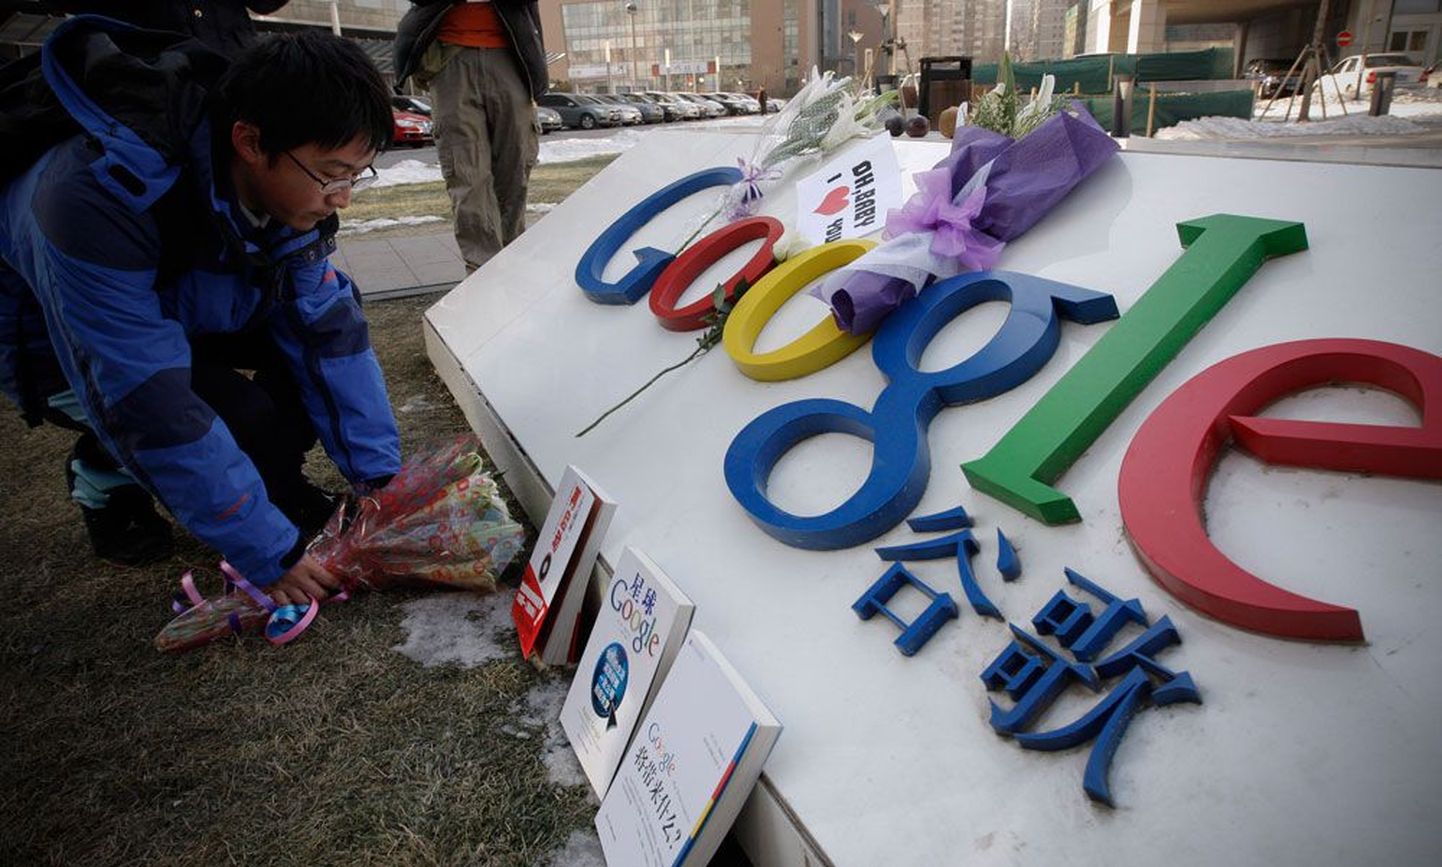 Hiinlased on viimase nädala jooksul Pekingis Google’i kohaliku peakorteri juurde ettevõtte jätkamise toetuseks lillekimpe ja meeneid viinud.